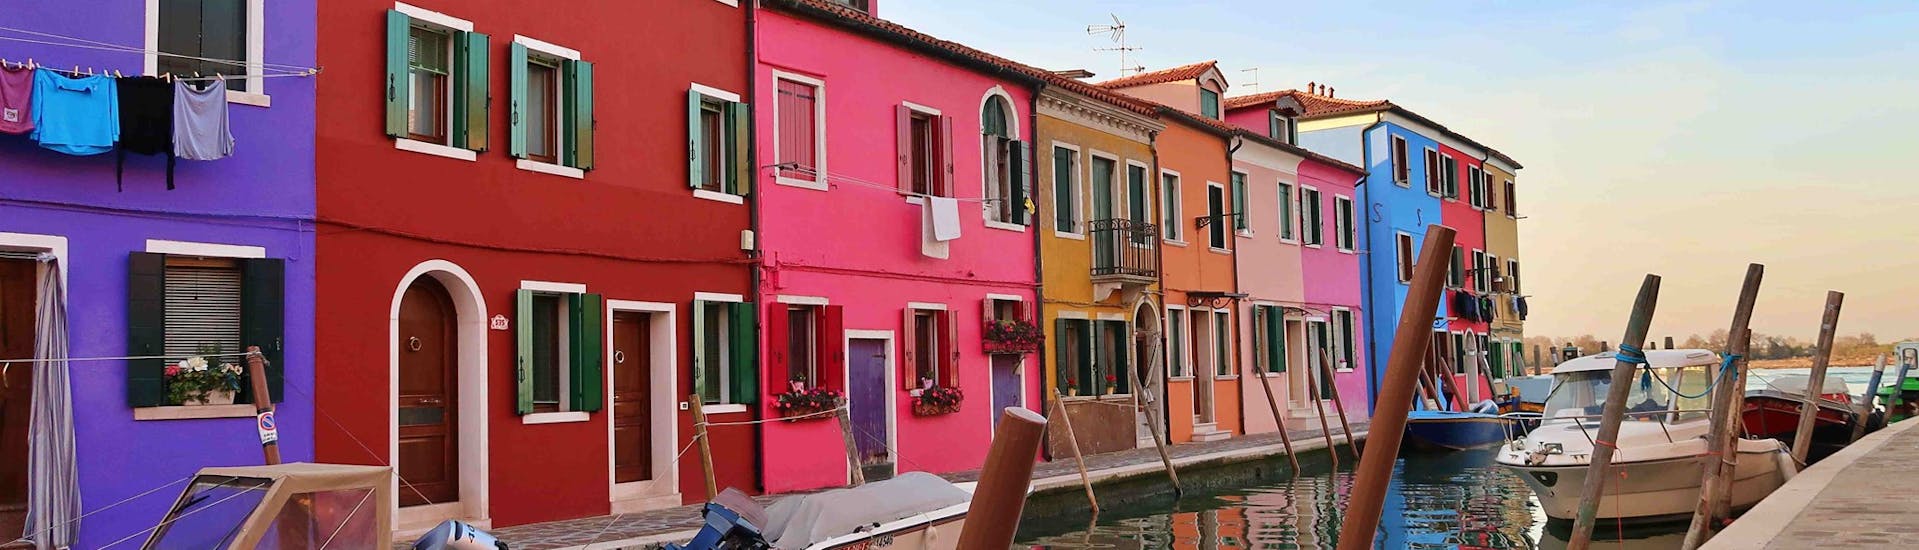 Maisons colorées le long d'un canal à Burano vues lors de la promenade en bateau de Venise à Murano et Burano avec Il Doge di Venezia.